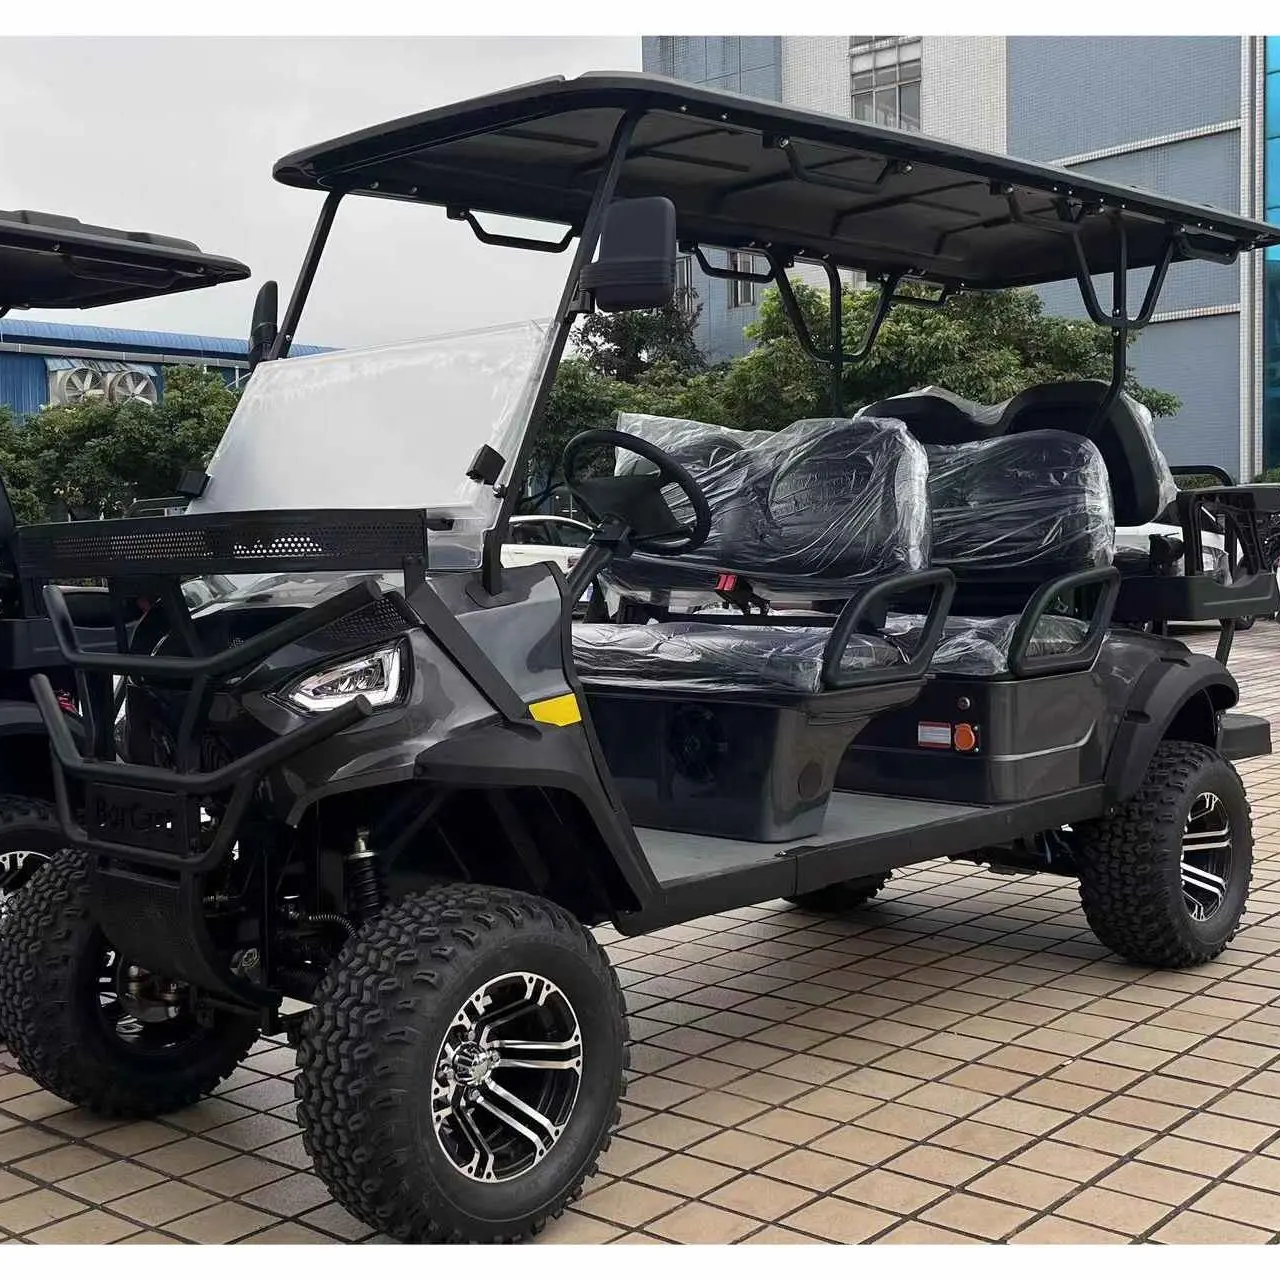 Carrinho de golfe personalizado, carrinho de golfe com 6 lugares levantado, sistema de freio a disco elétrico independente para caça e suspensão